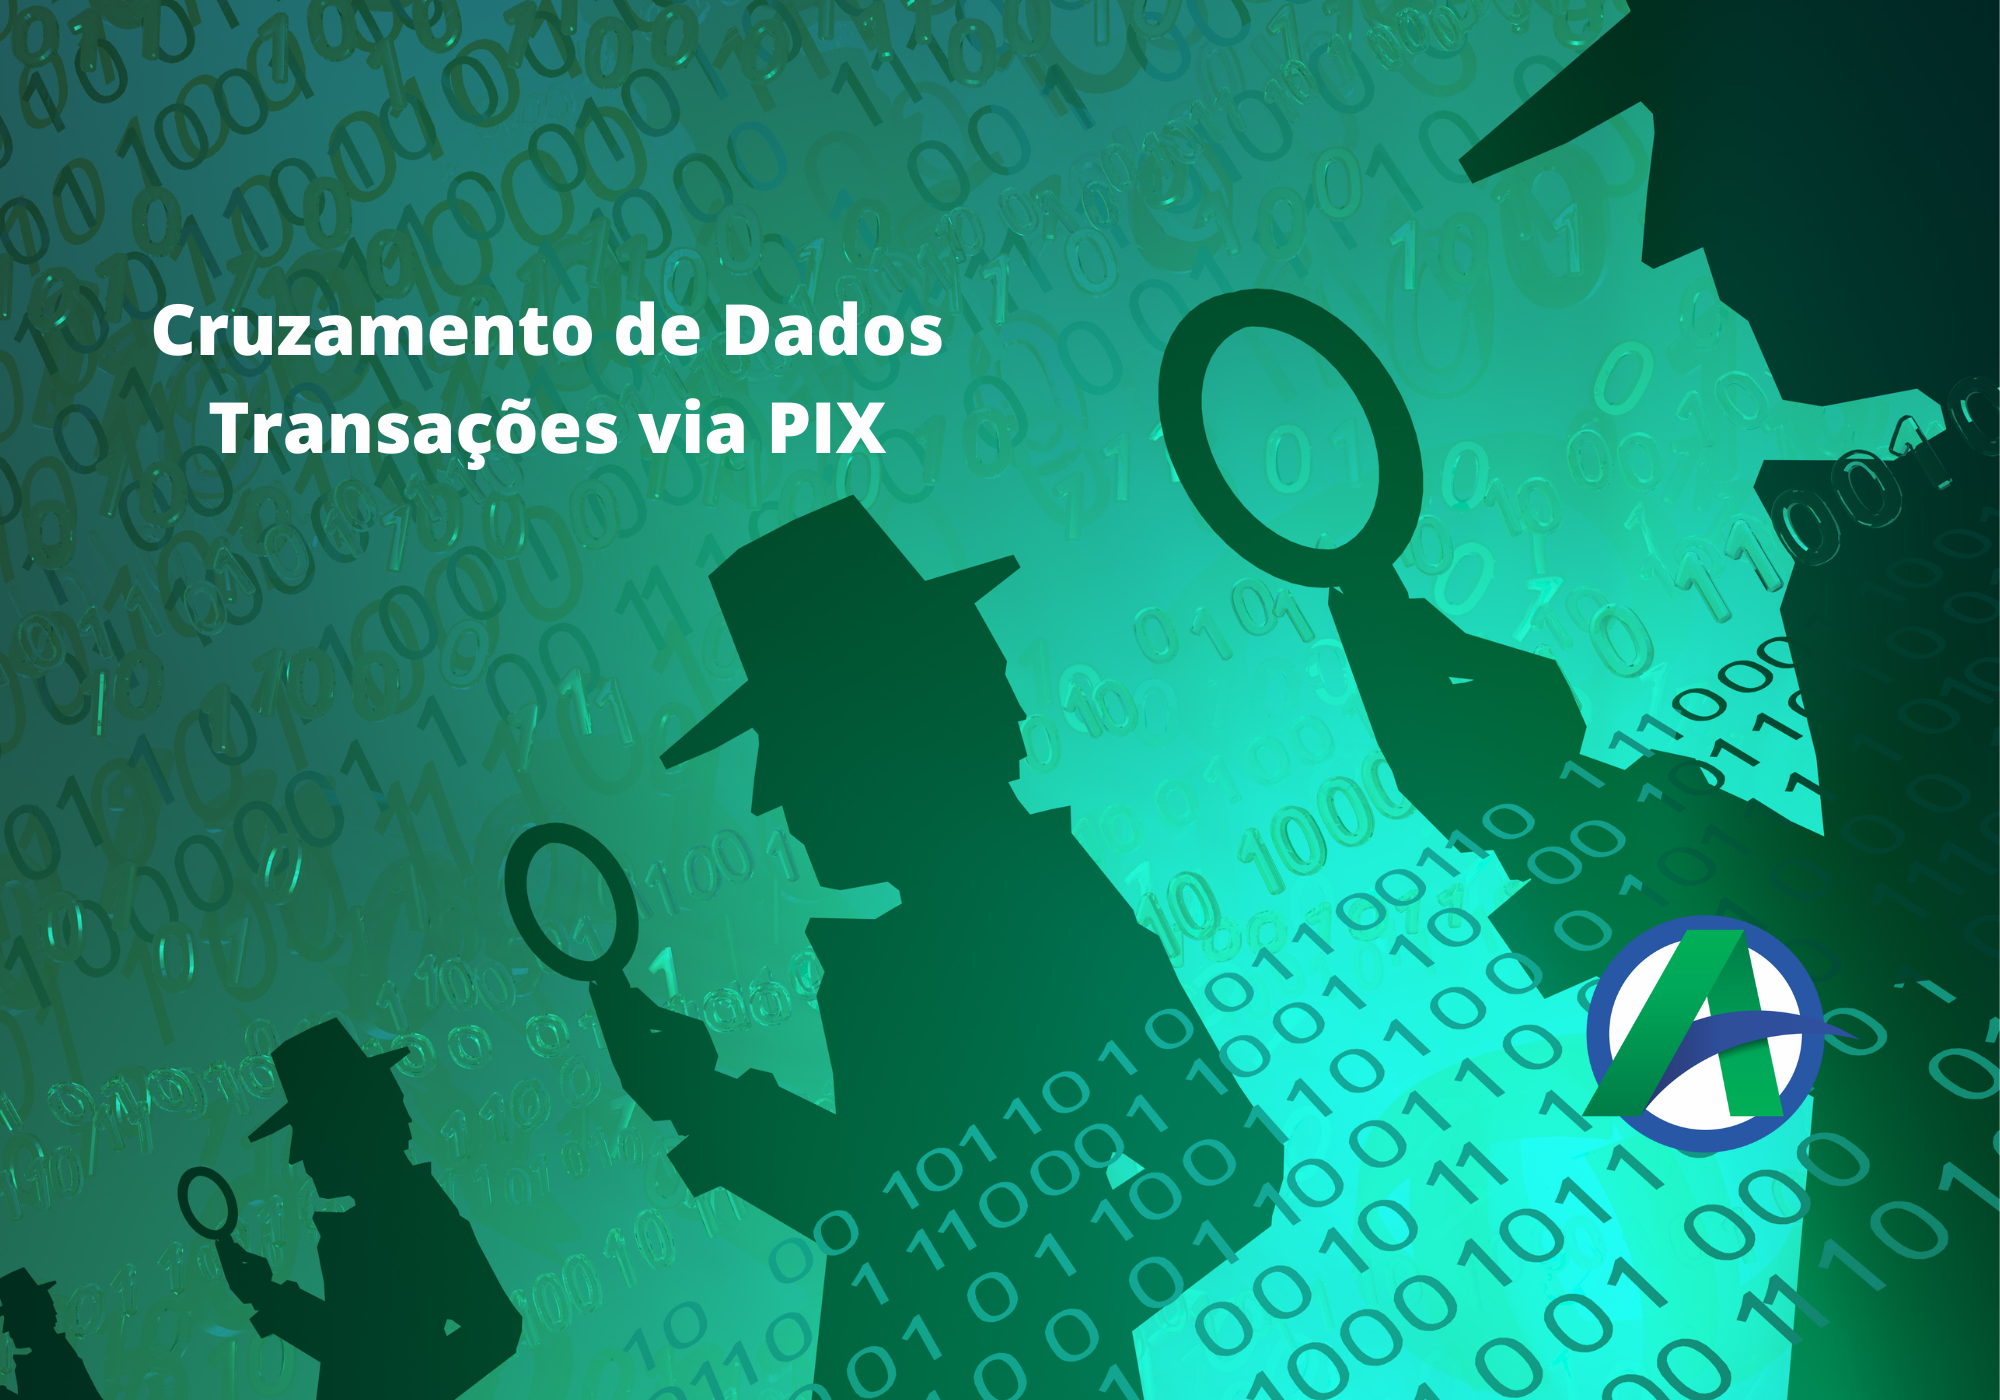 CRUZAMENTO DE DADOS-Transações via PIX.